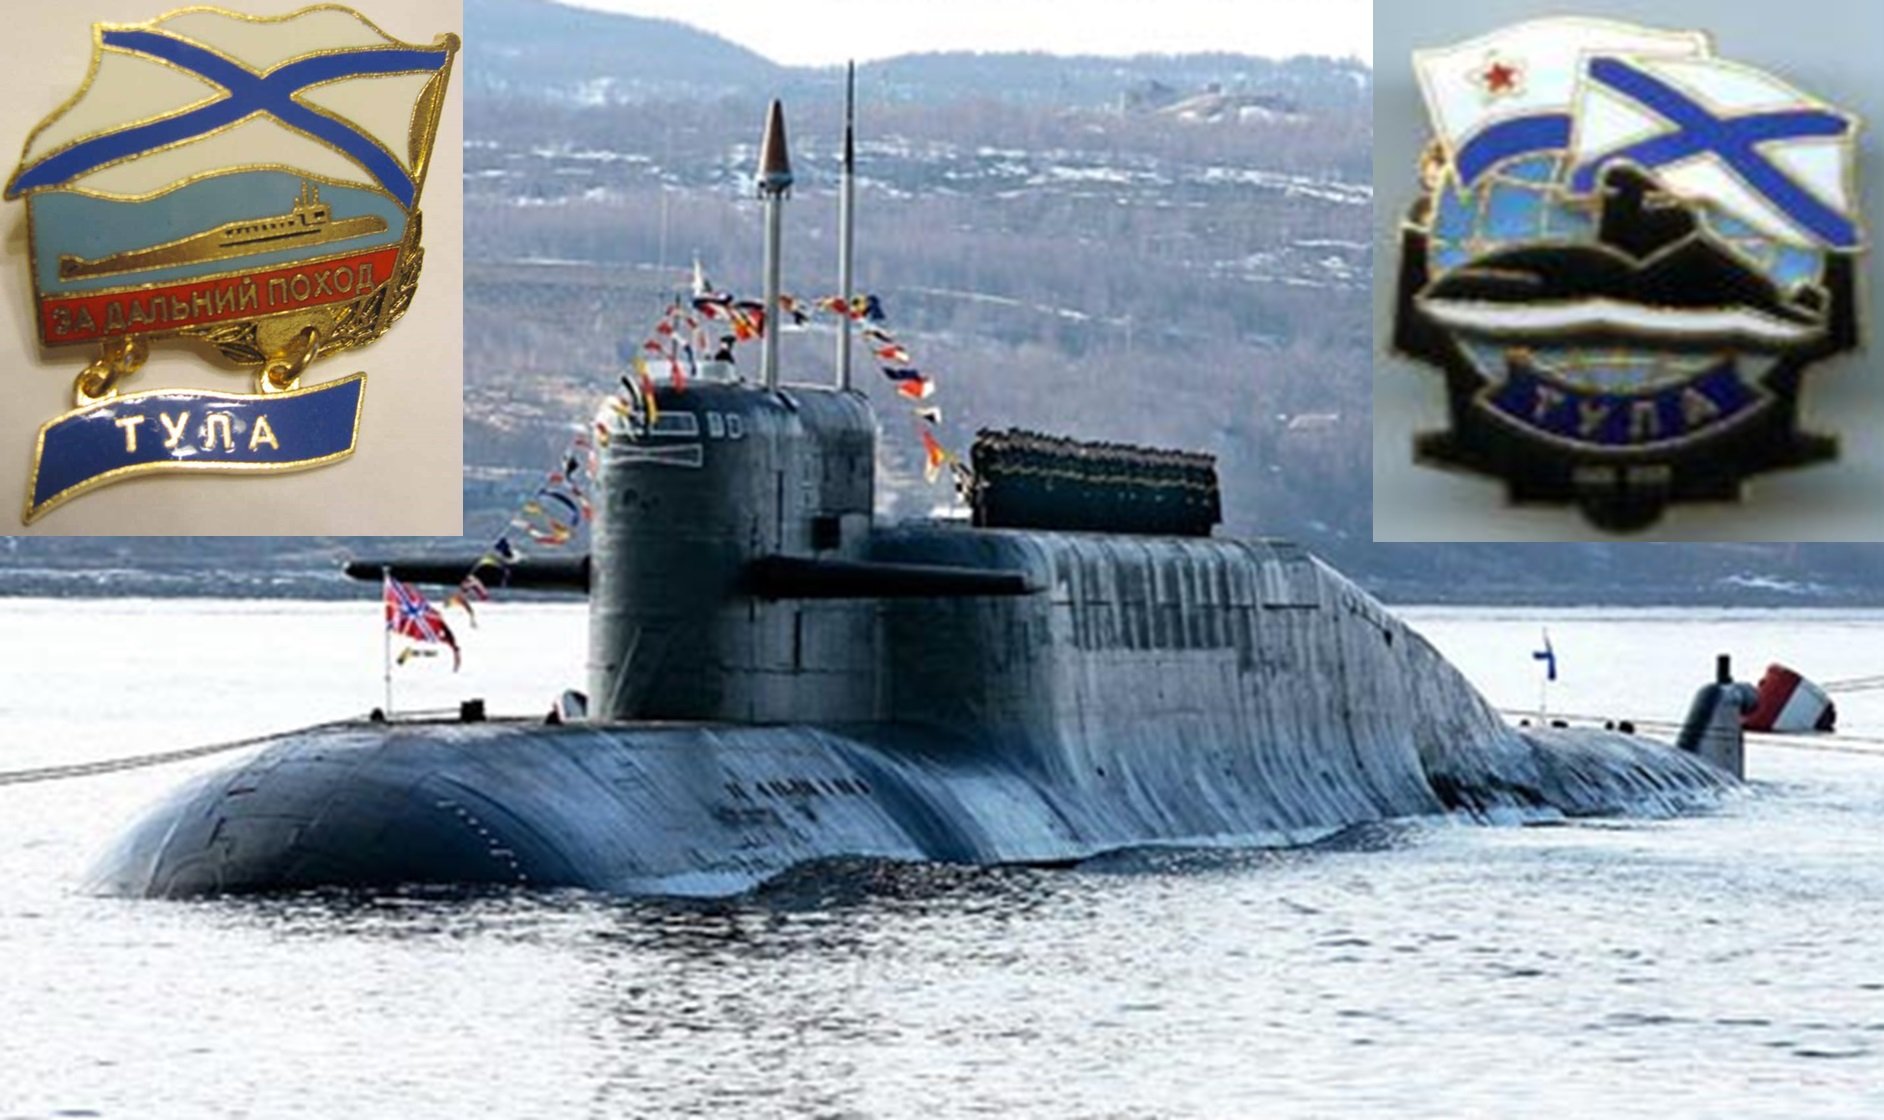 Подводная лодка тихоокеанского флота. БДРМ 667 проект подводная лодка. Подводные лодки проекта 667бдрм «Дельфин». К-114 Тула. Атомная подводная лодка Тула.